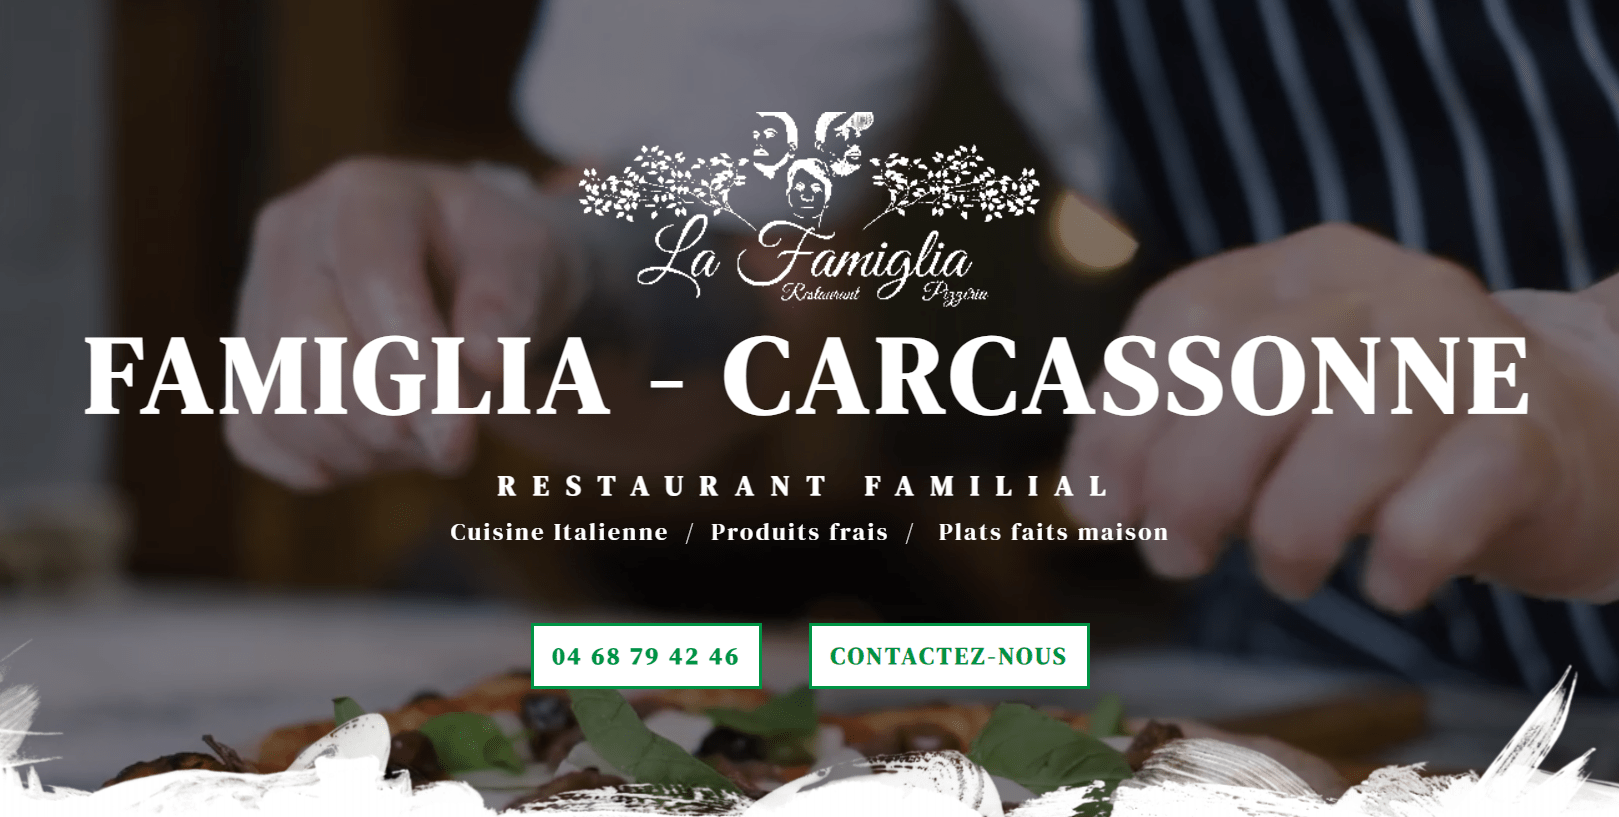 Famiglia Restaurant Pizzeria Carcassonne